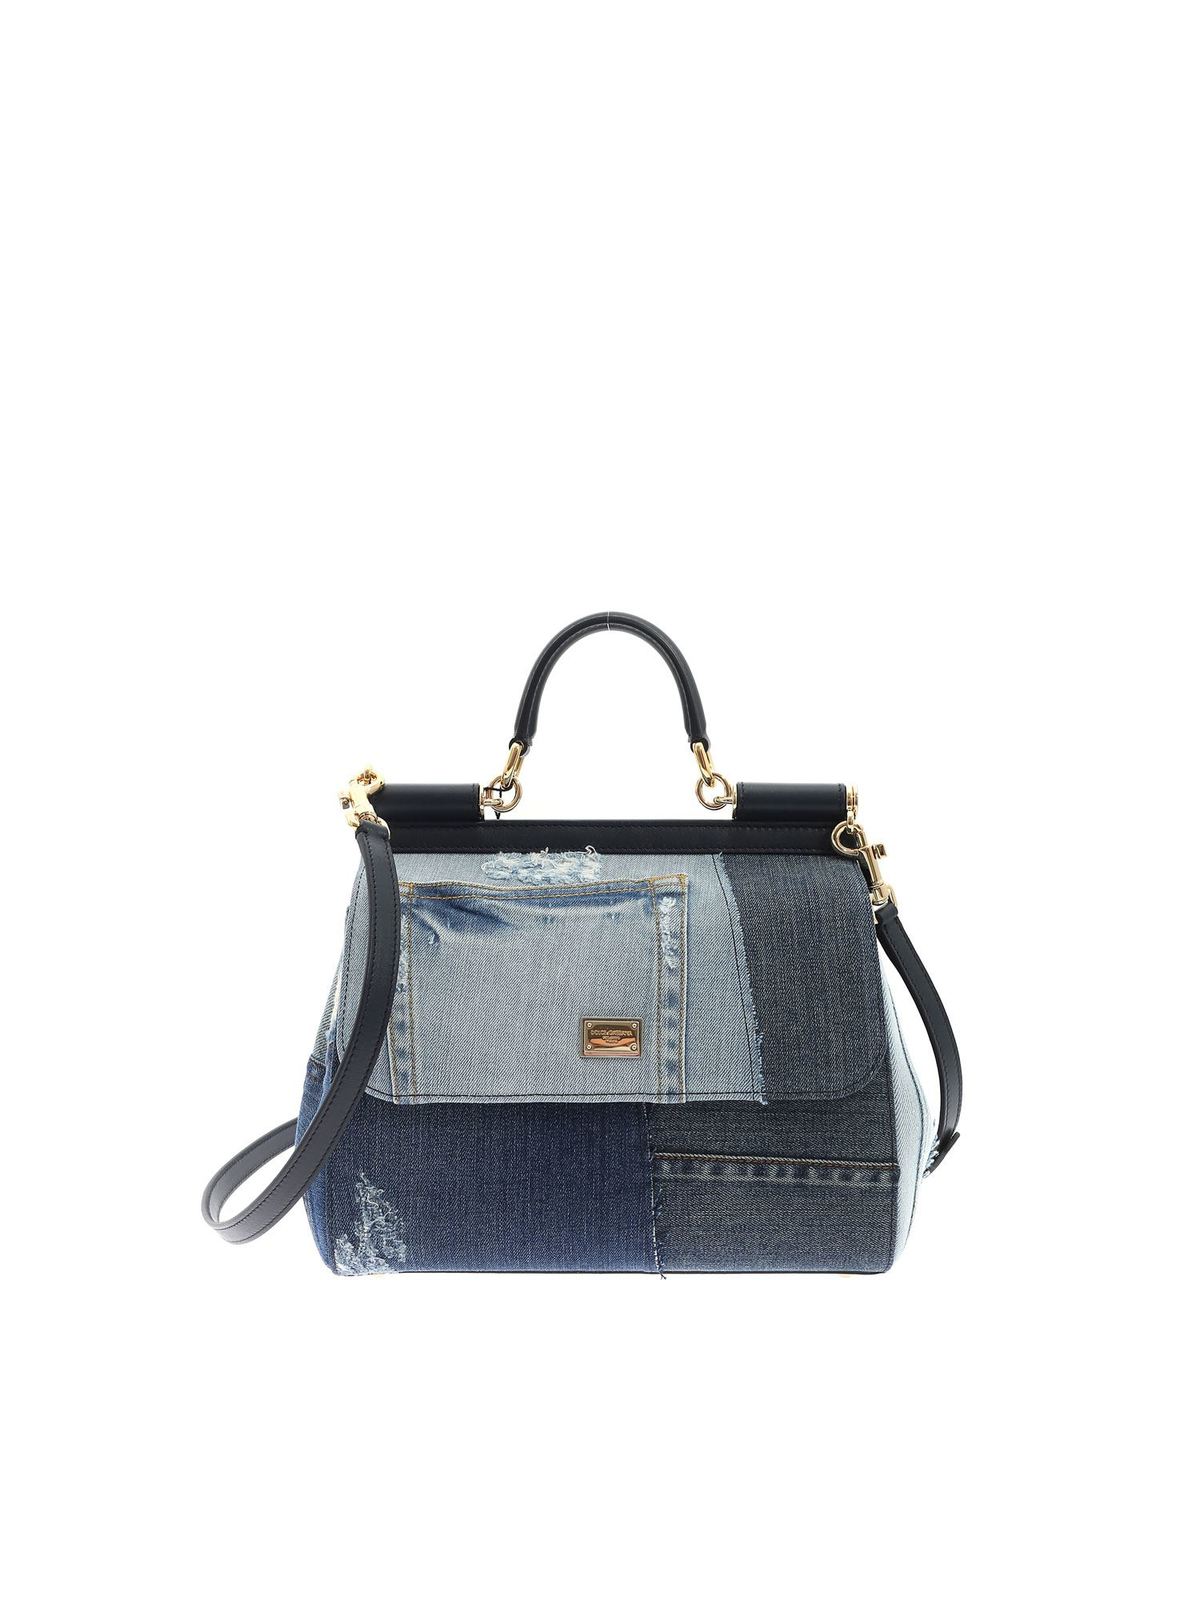 Dolce & Gabbana - Denim Bag - ShopperBoard